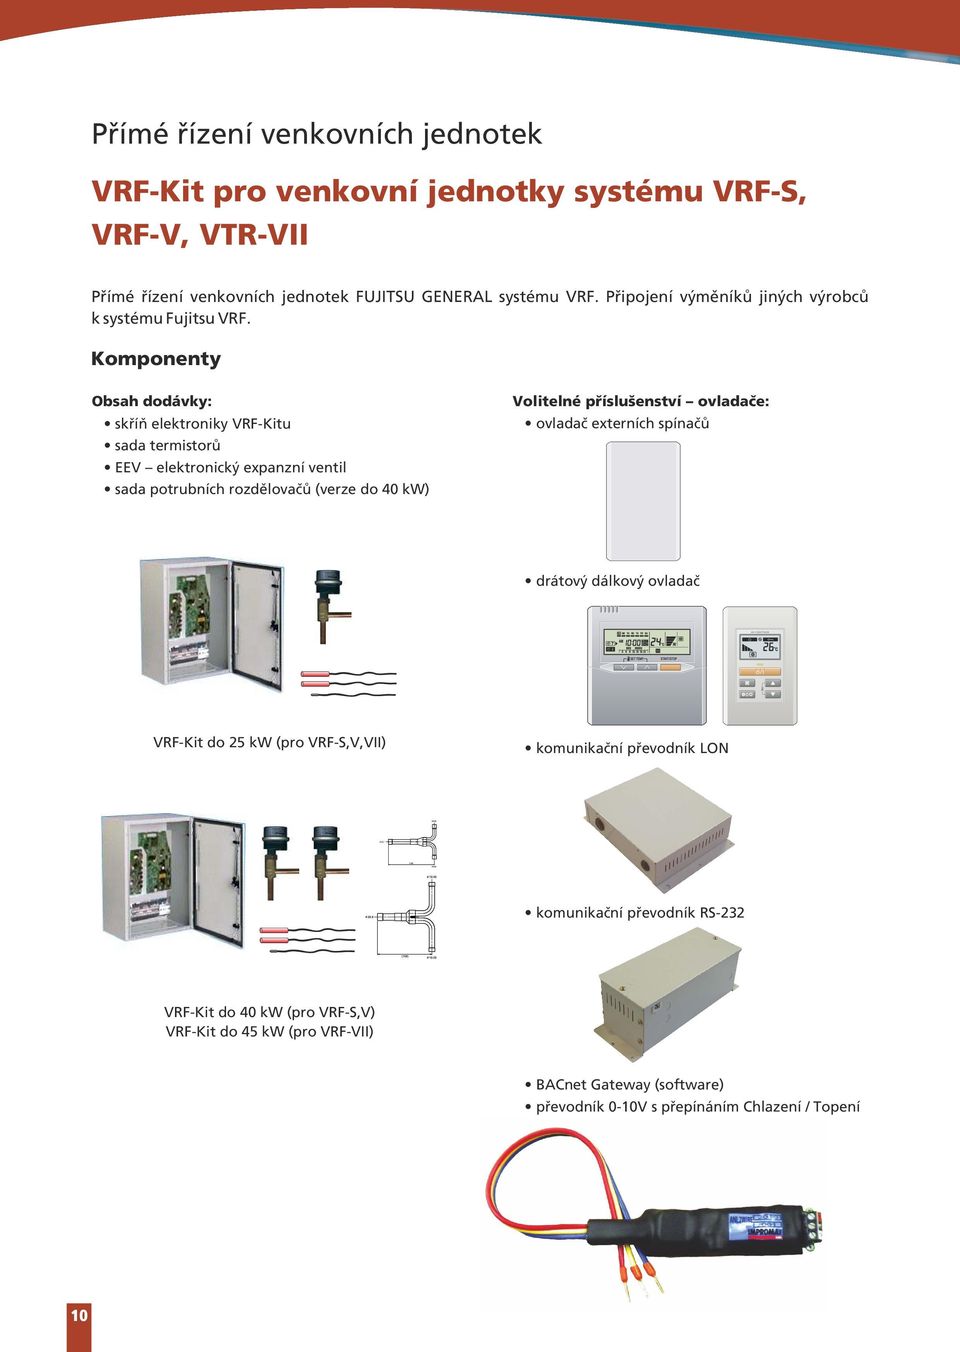 Komponenty bsah dodávky skříň elektroniky VRF-Kitu sada termistorů EEV elektronický expanzní ventil sada potrubních rozdělovačů (verze do 40 kw) Volitelné